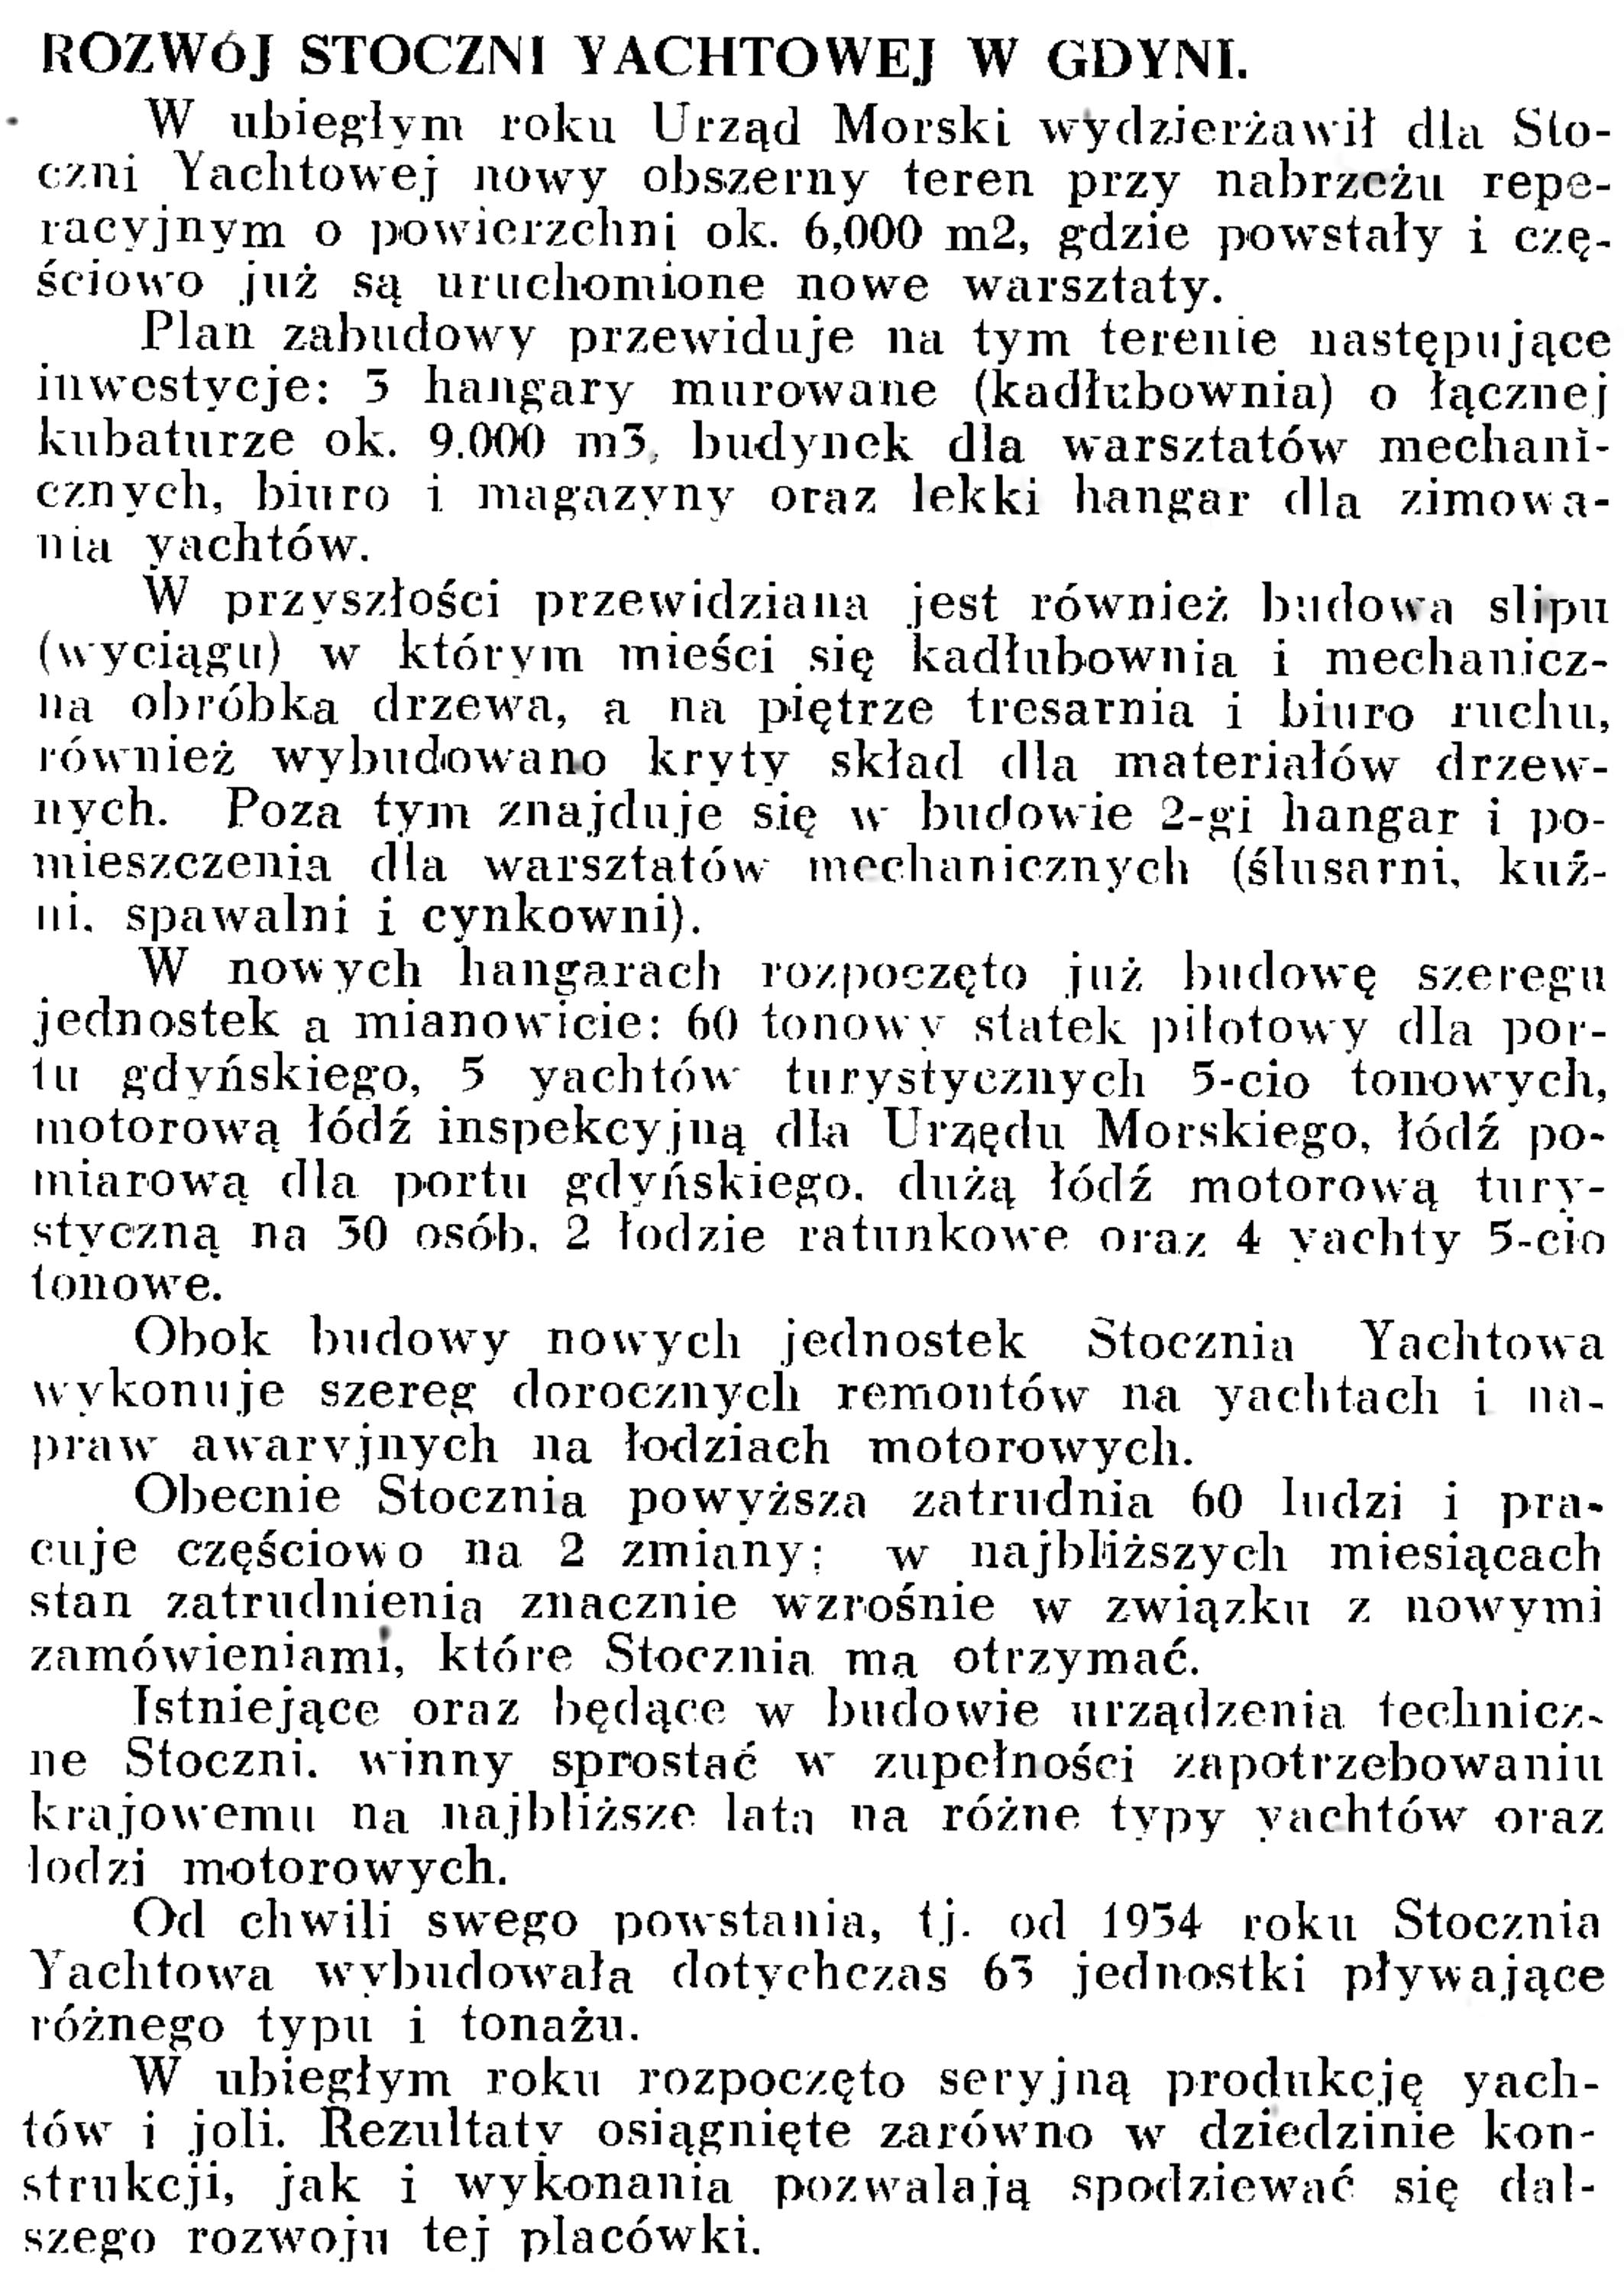 Rozwój stoczni Yachtowej w Gdyni // Wiadomości Portowe. - 1939, nr 3, s. 18